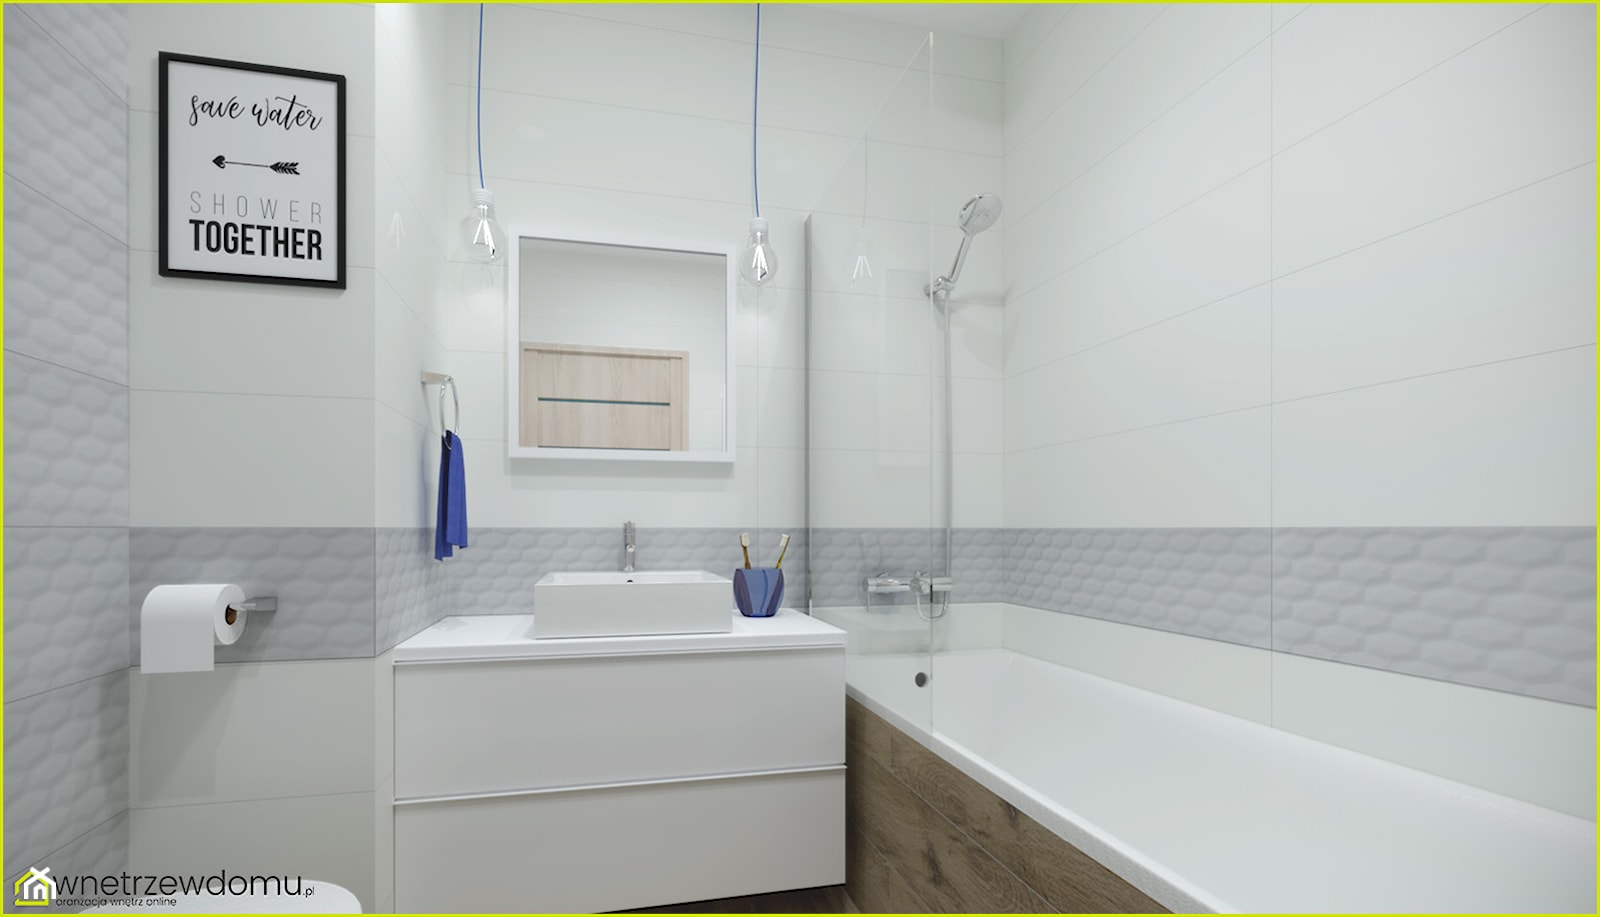 Biało-szara łazienka - zdjęcie od wnetrzewdomu - Homebook